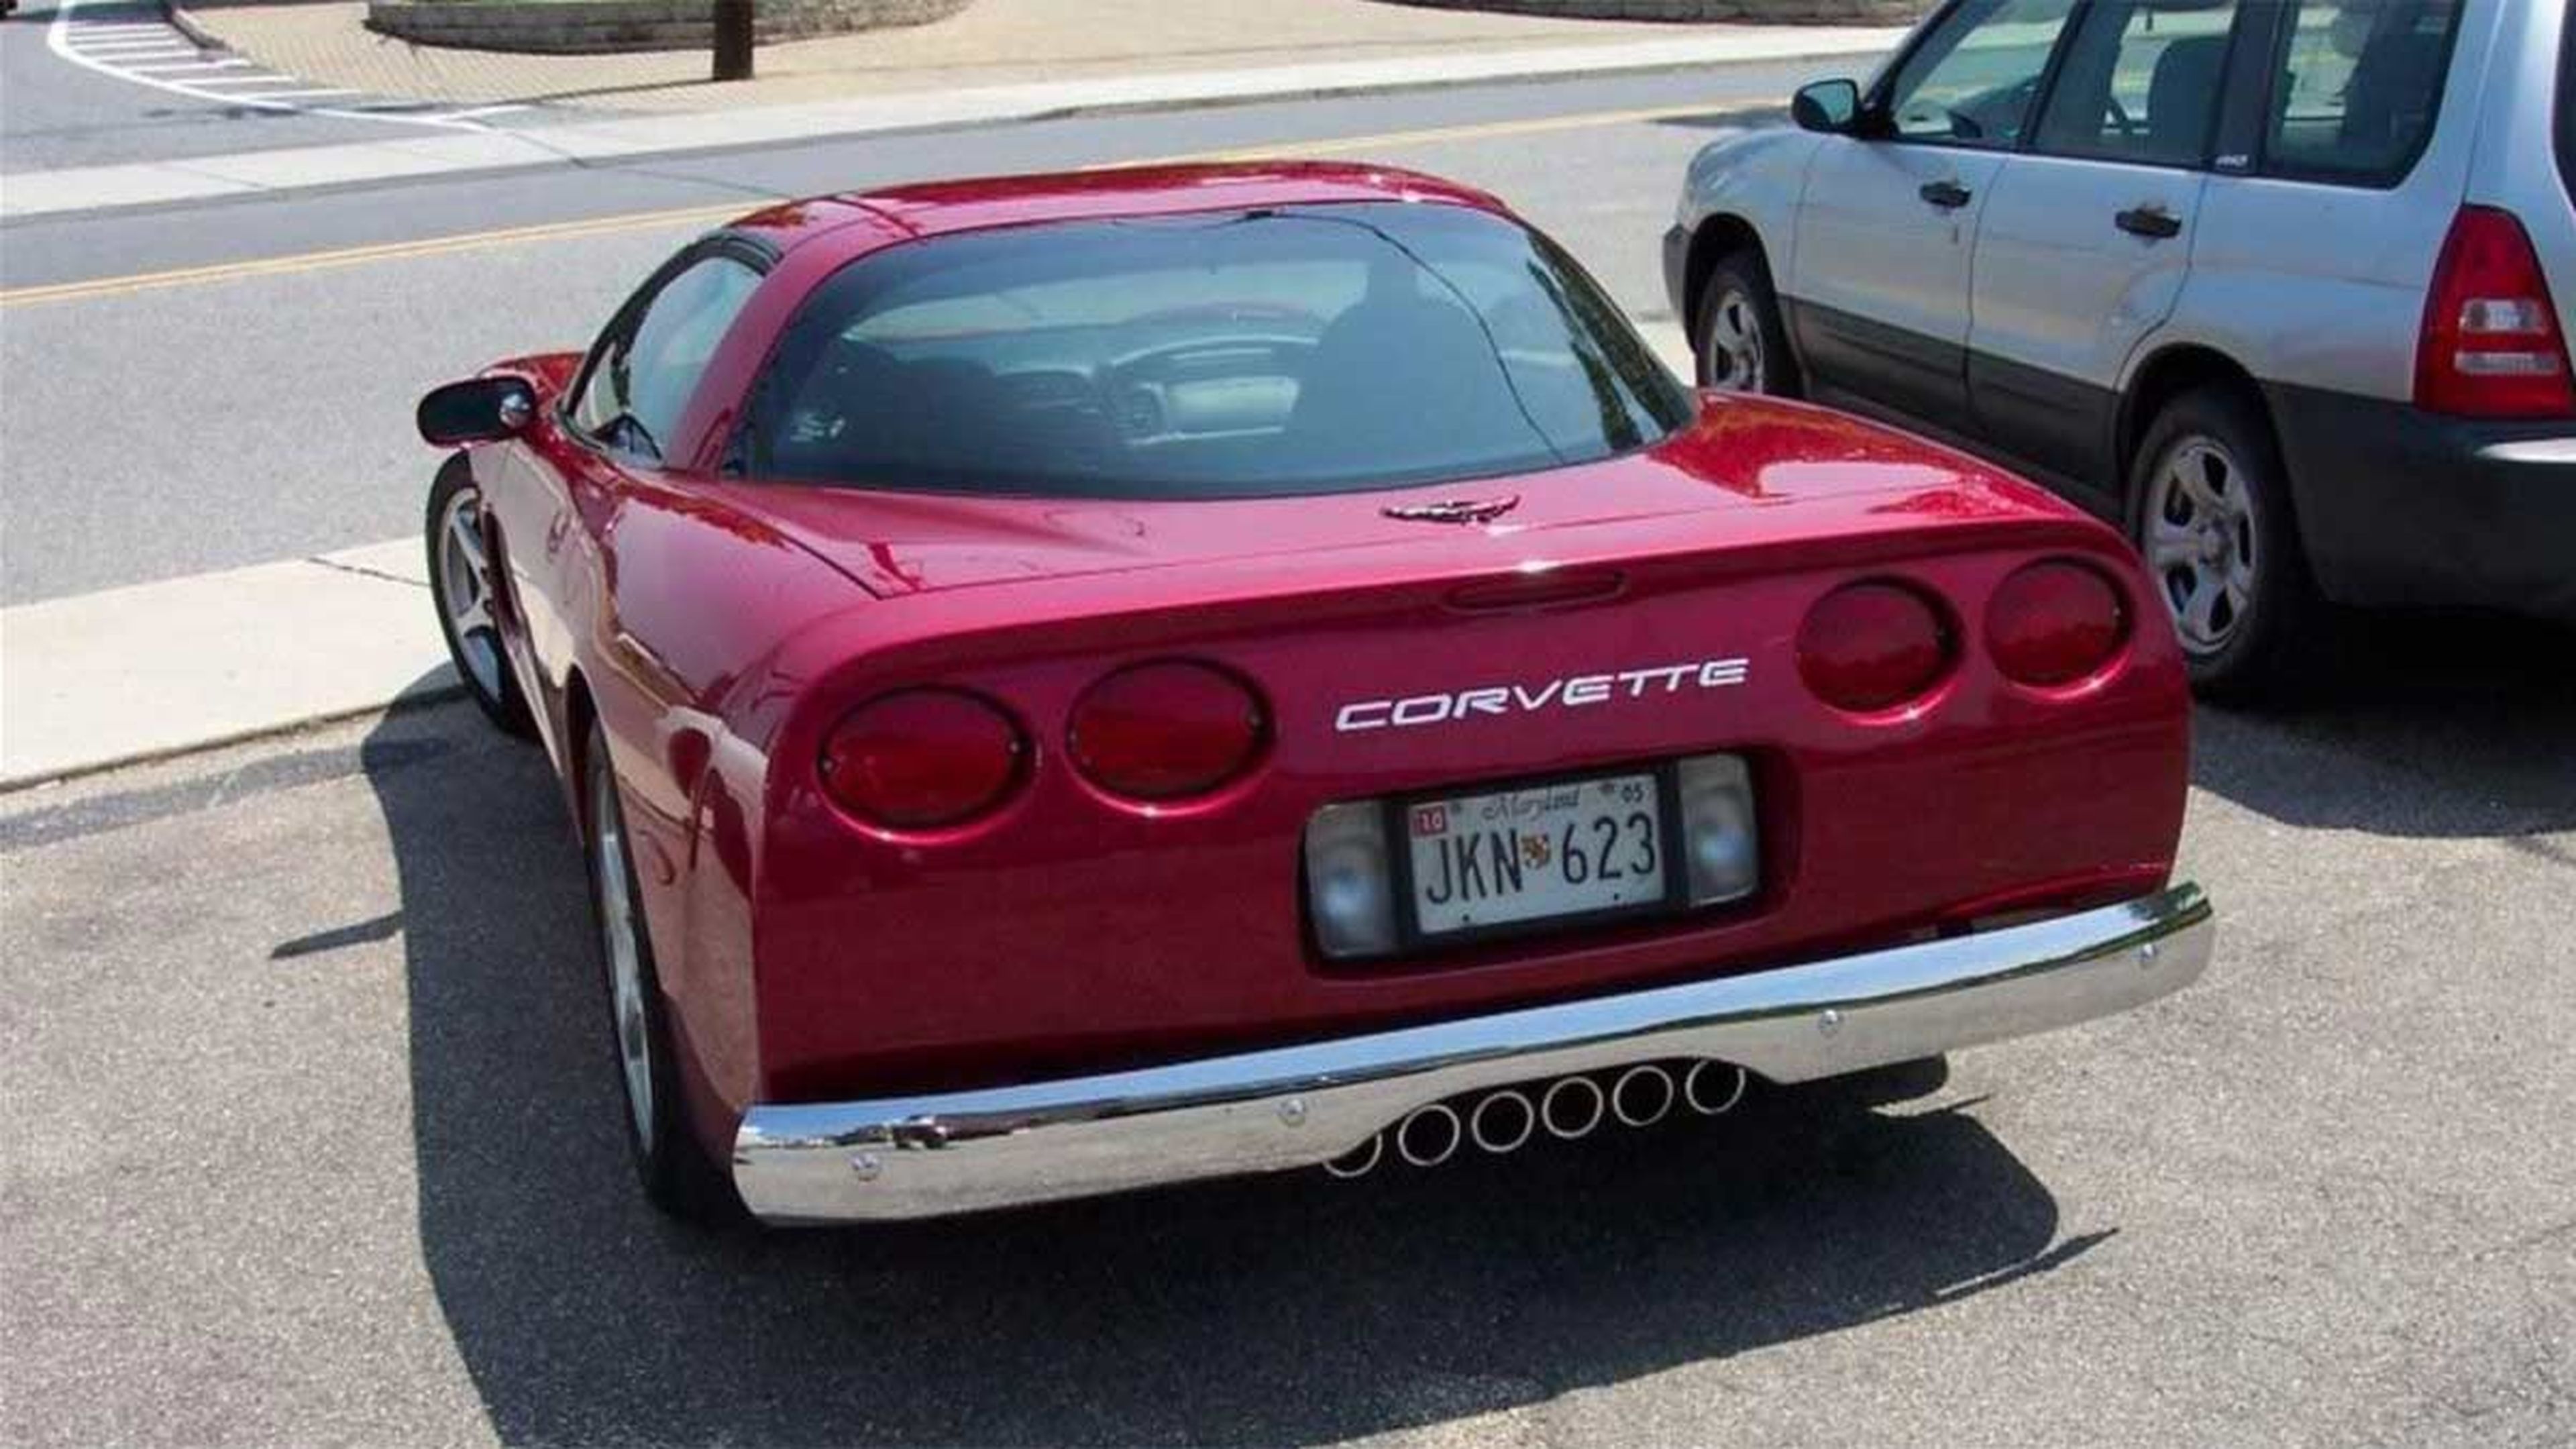 Corvette seis escapes